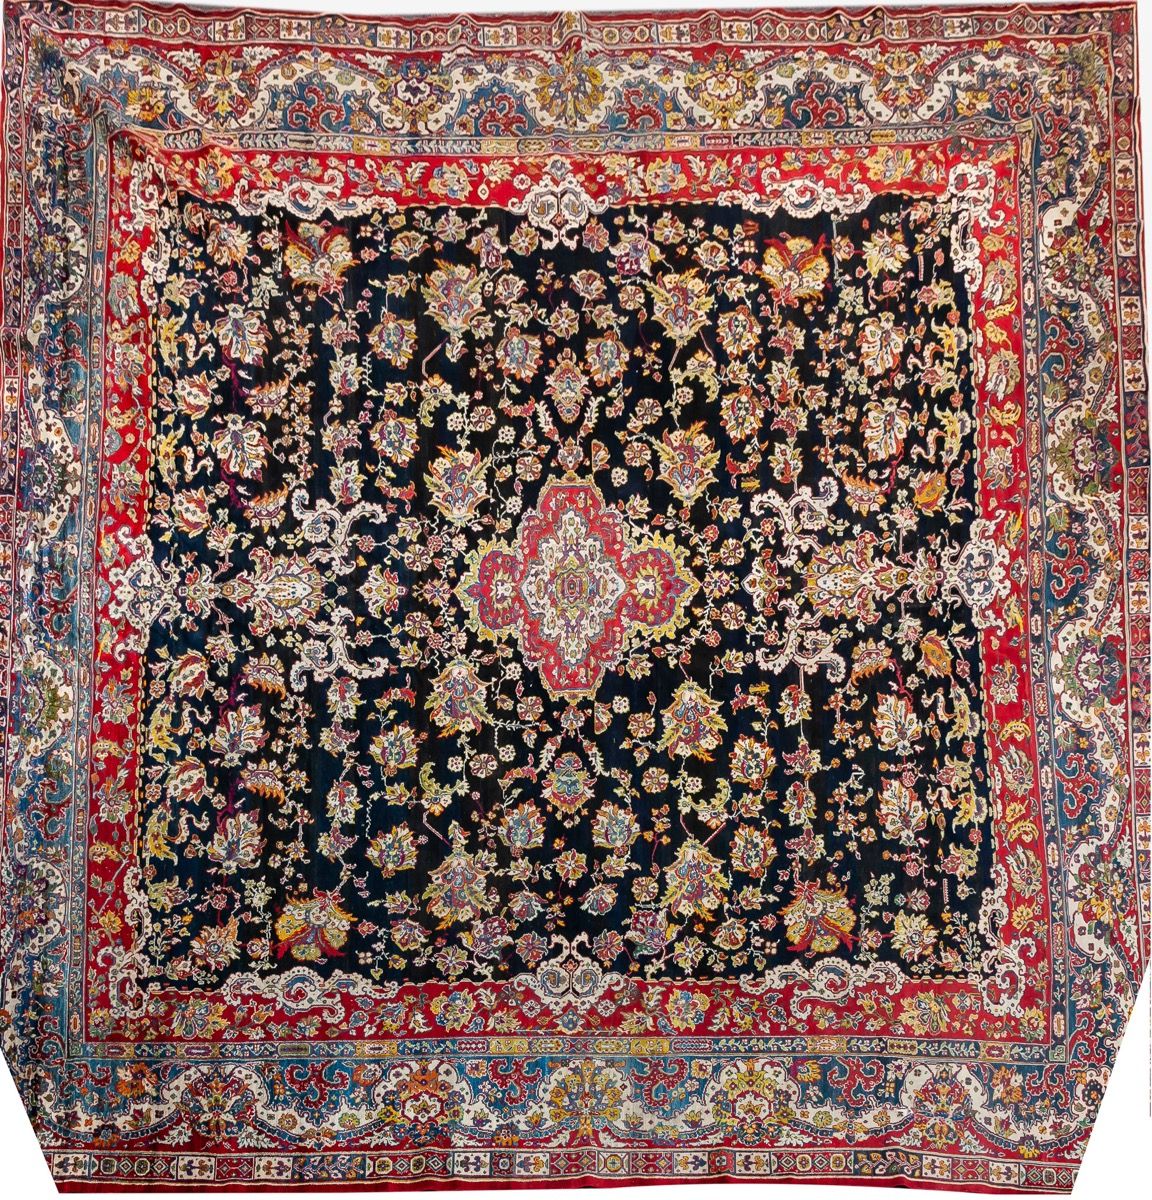 Null 波斯羊毛地毯，装饰着黑色领域的植物卷轴
480 x 500厘米
2.000 - 2.500 €